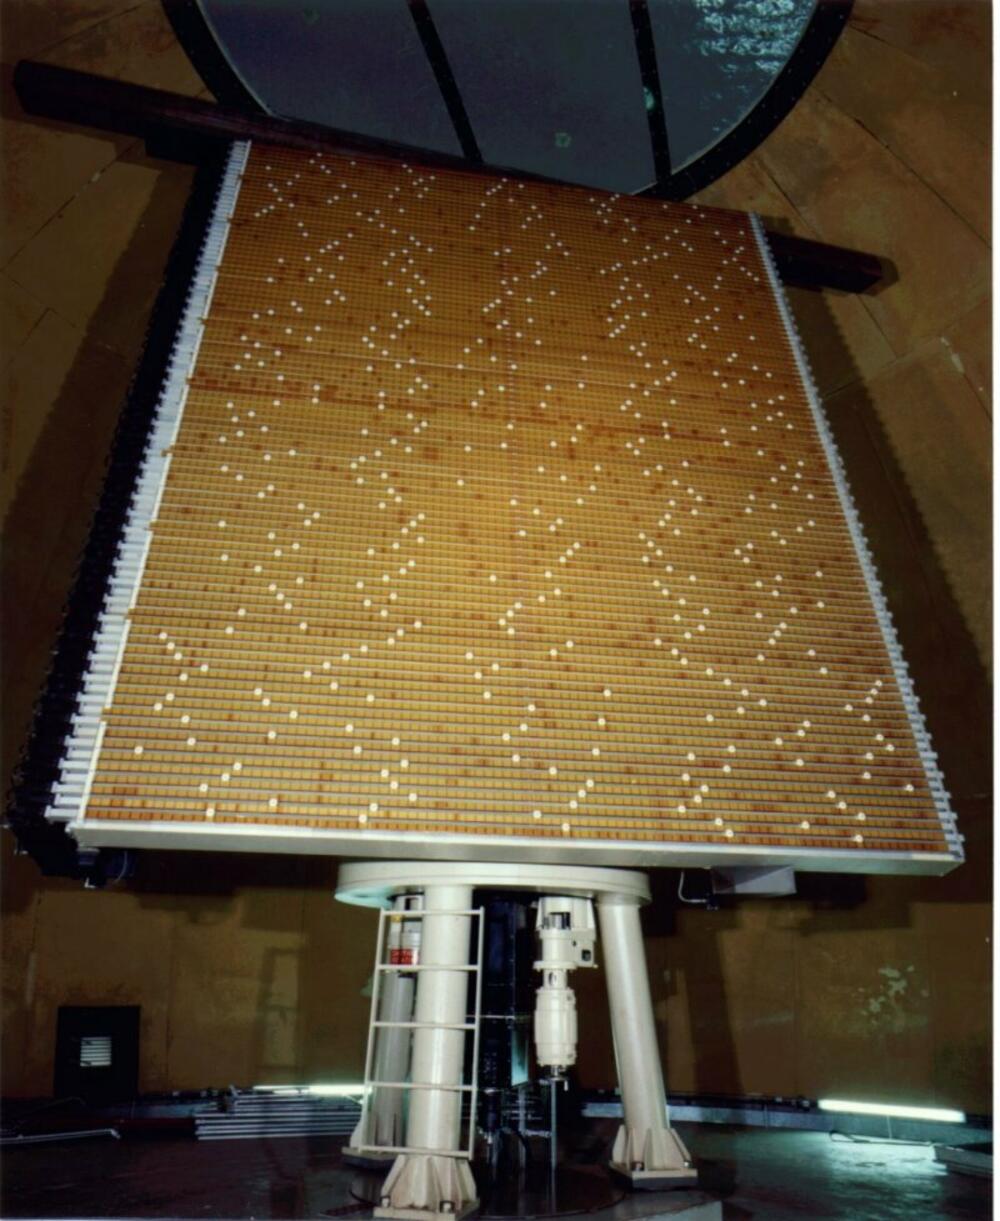 Antena radara Raytheon, koji će biti postavljen na Bjelasici